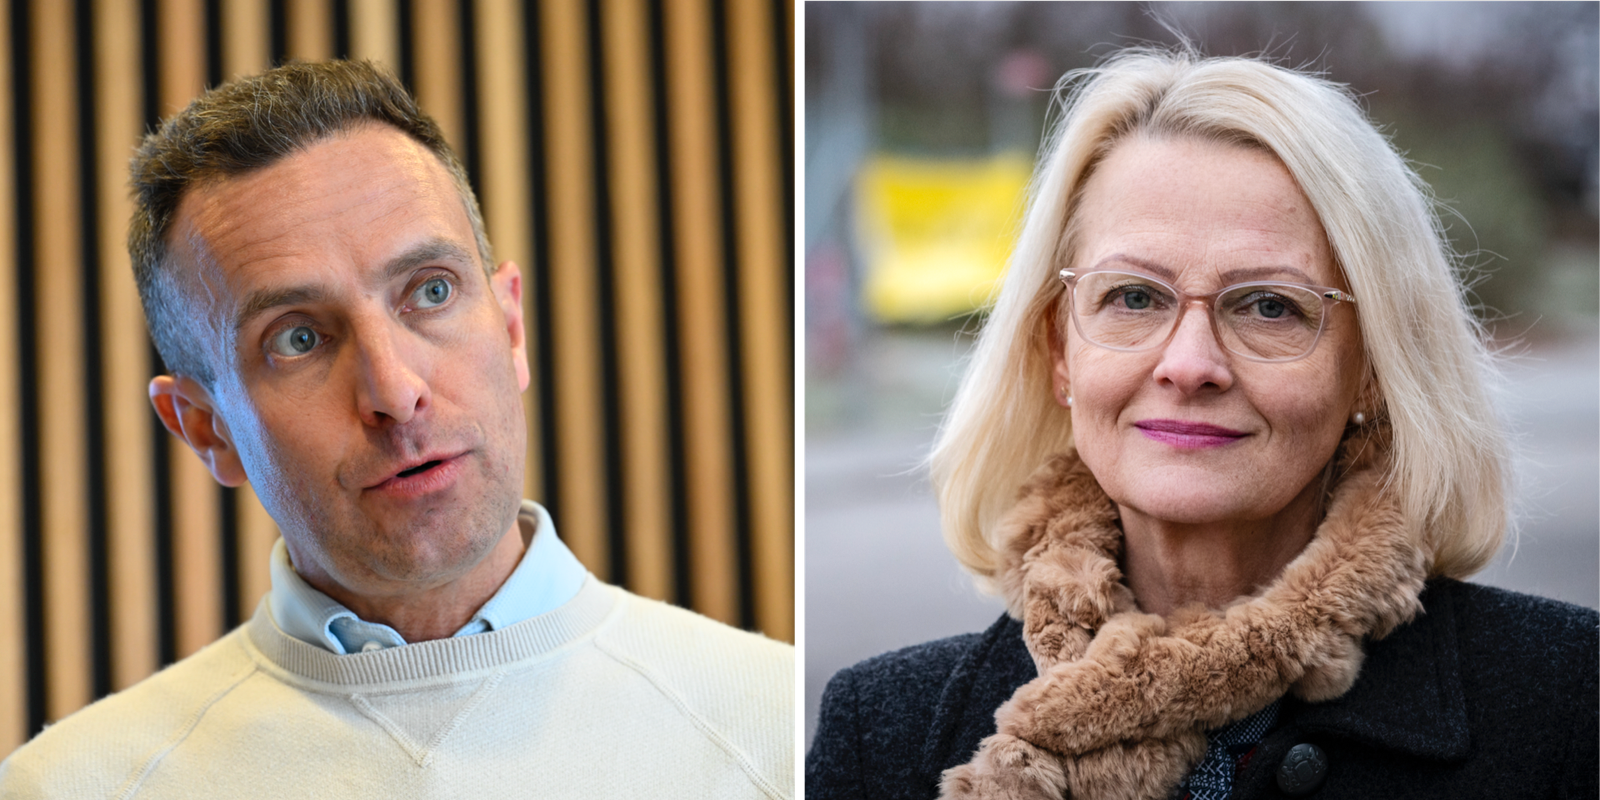 svenska kollegorna om attacken: ”fruktansvärt”